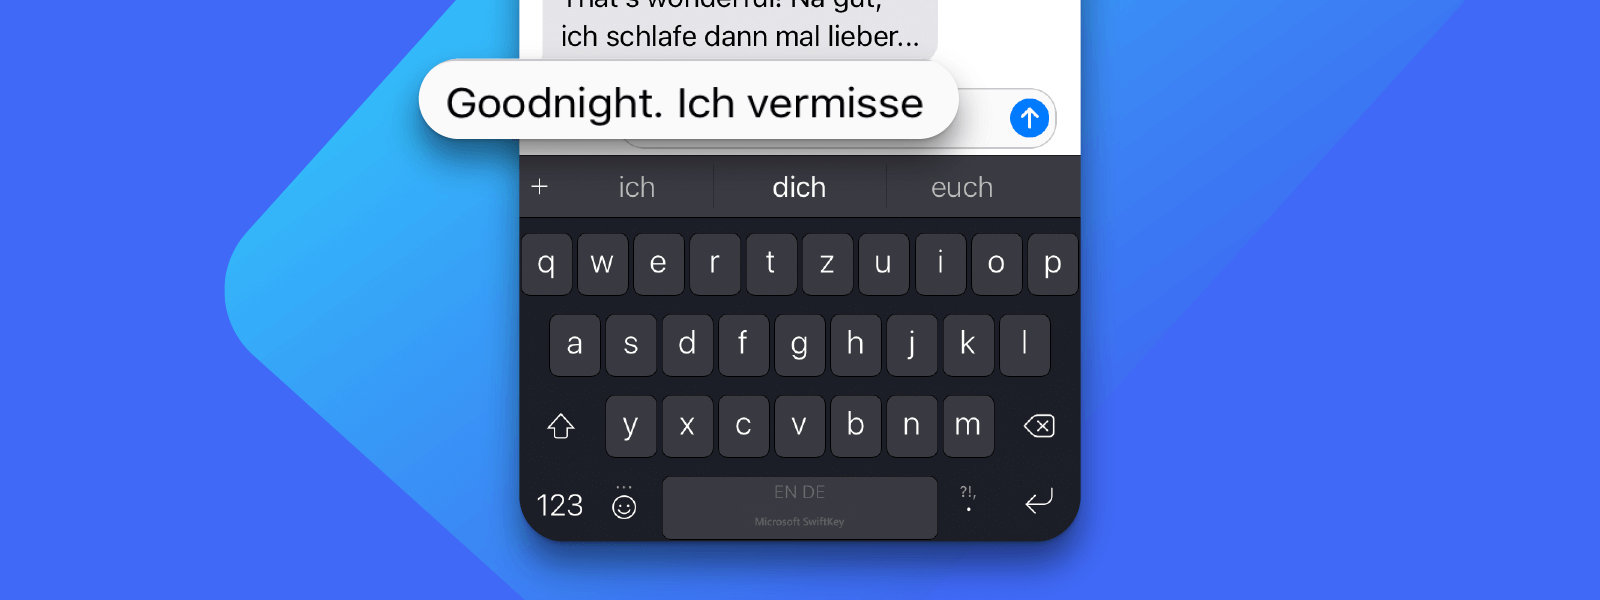 iPhone mit SwiftKey für die Eingabe in verschiedenen Sprachen